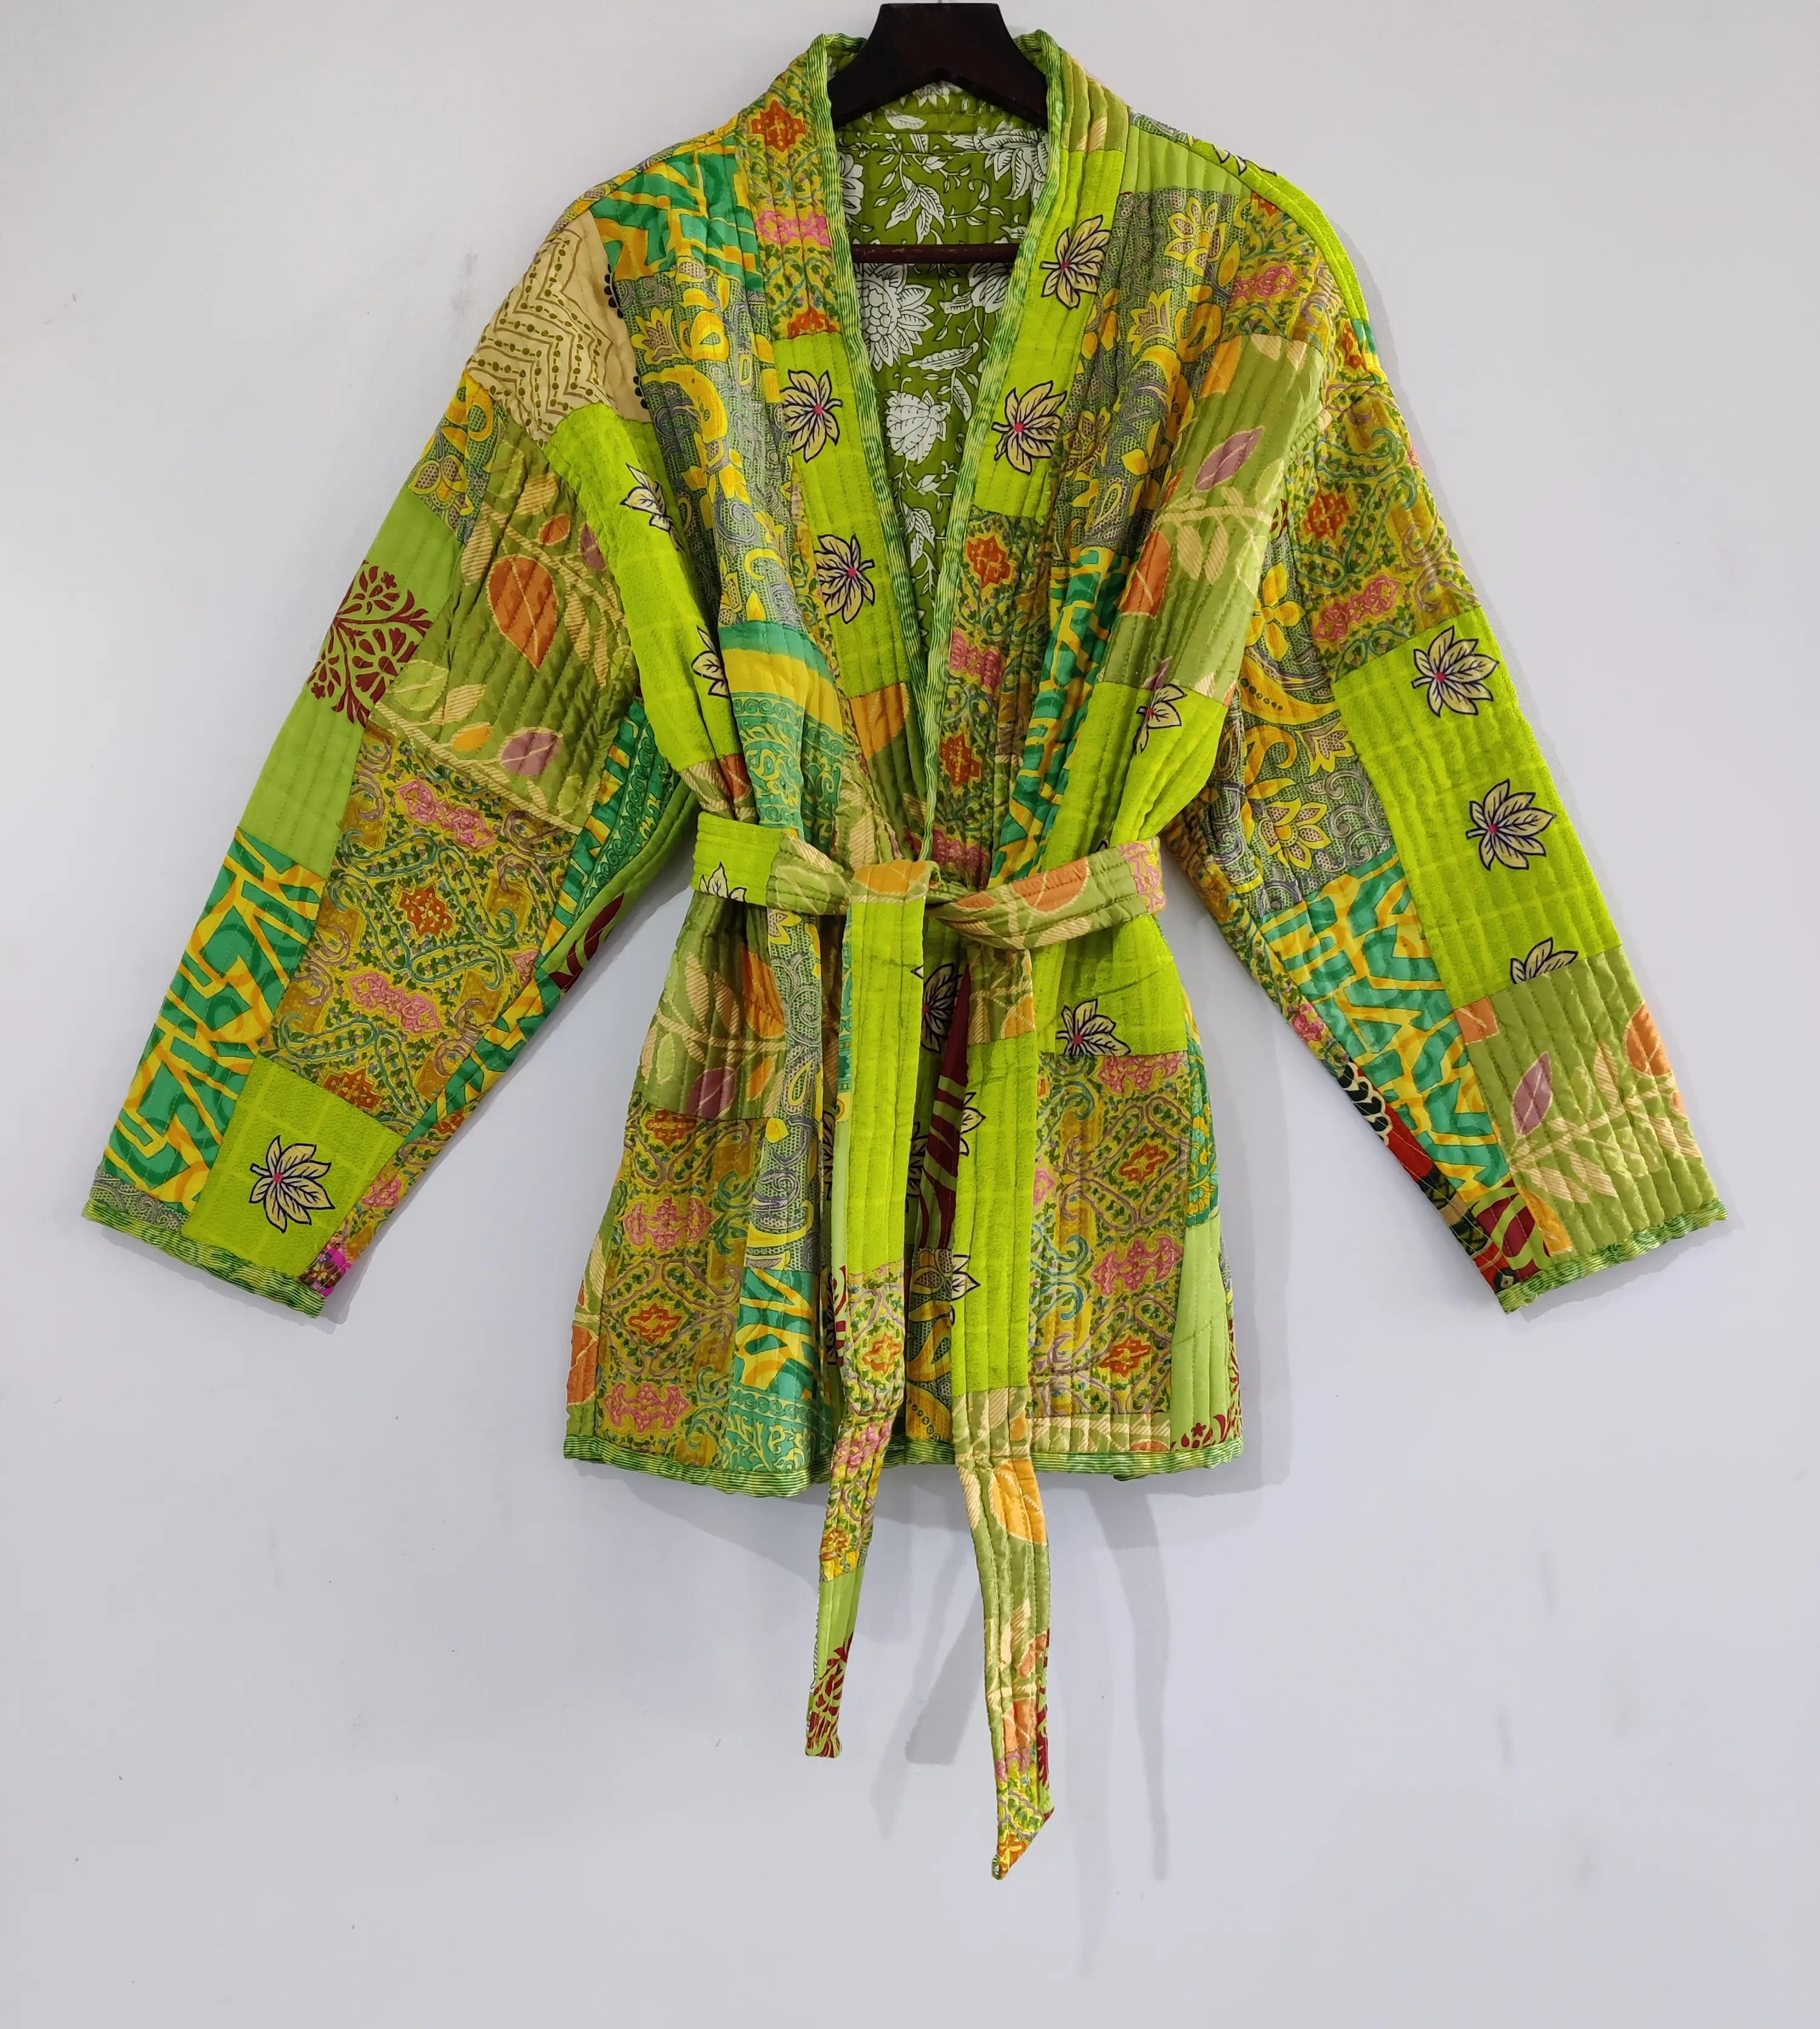 Veste matelassée en patchwork de soie de style bohème veste Kantha courte matelassée unisexe veste d'hiver en soie de coton indien faite à la main manteau